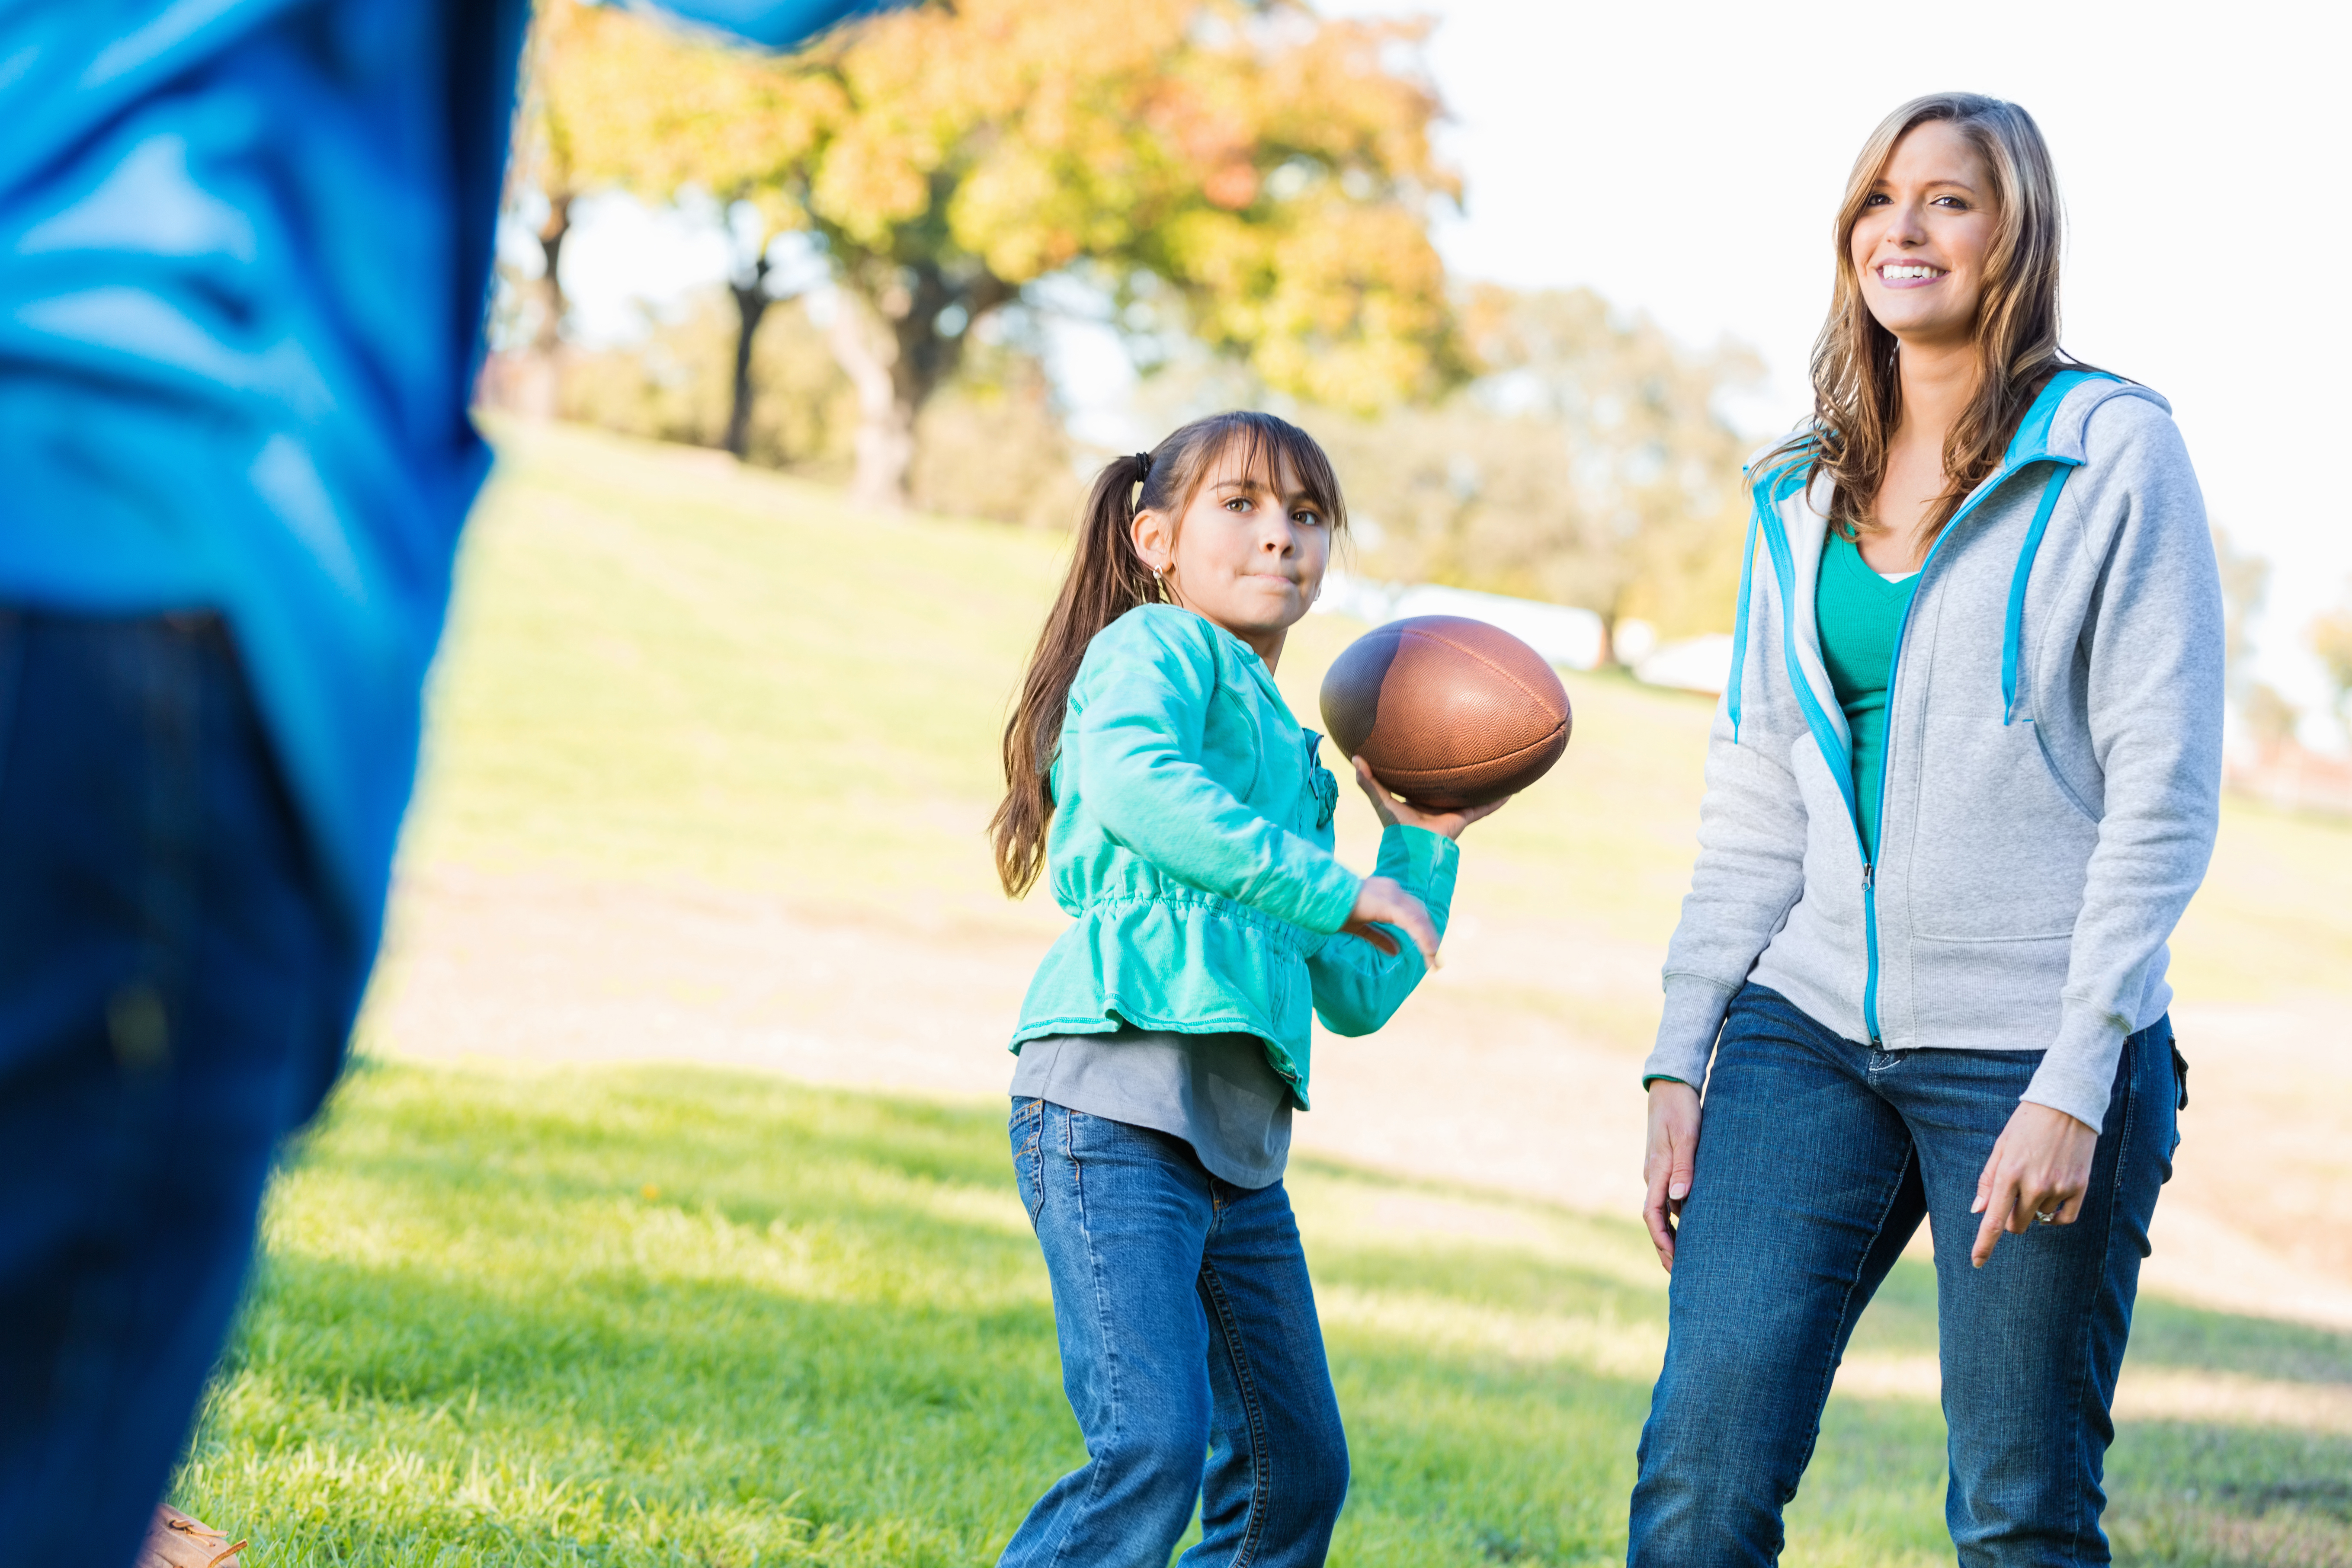 ¿Qué puede enseñar el futbol americano a la maternidad?